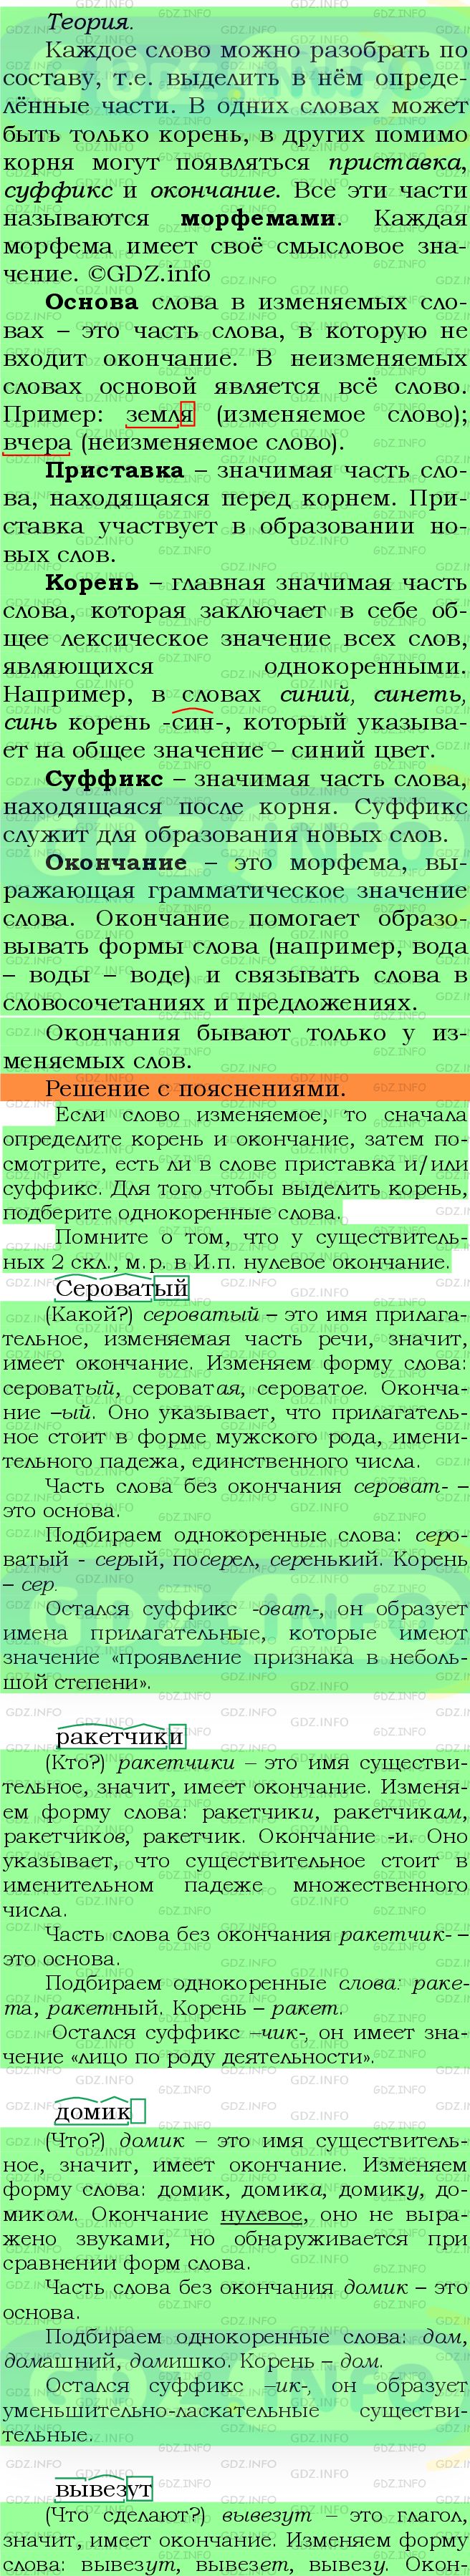 Фото подробного решения: Номер №383 из ГДЗ по Русскому языку 5 класс: Ладыженская Т.А.